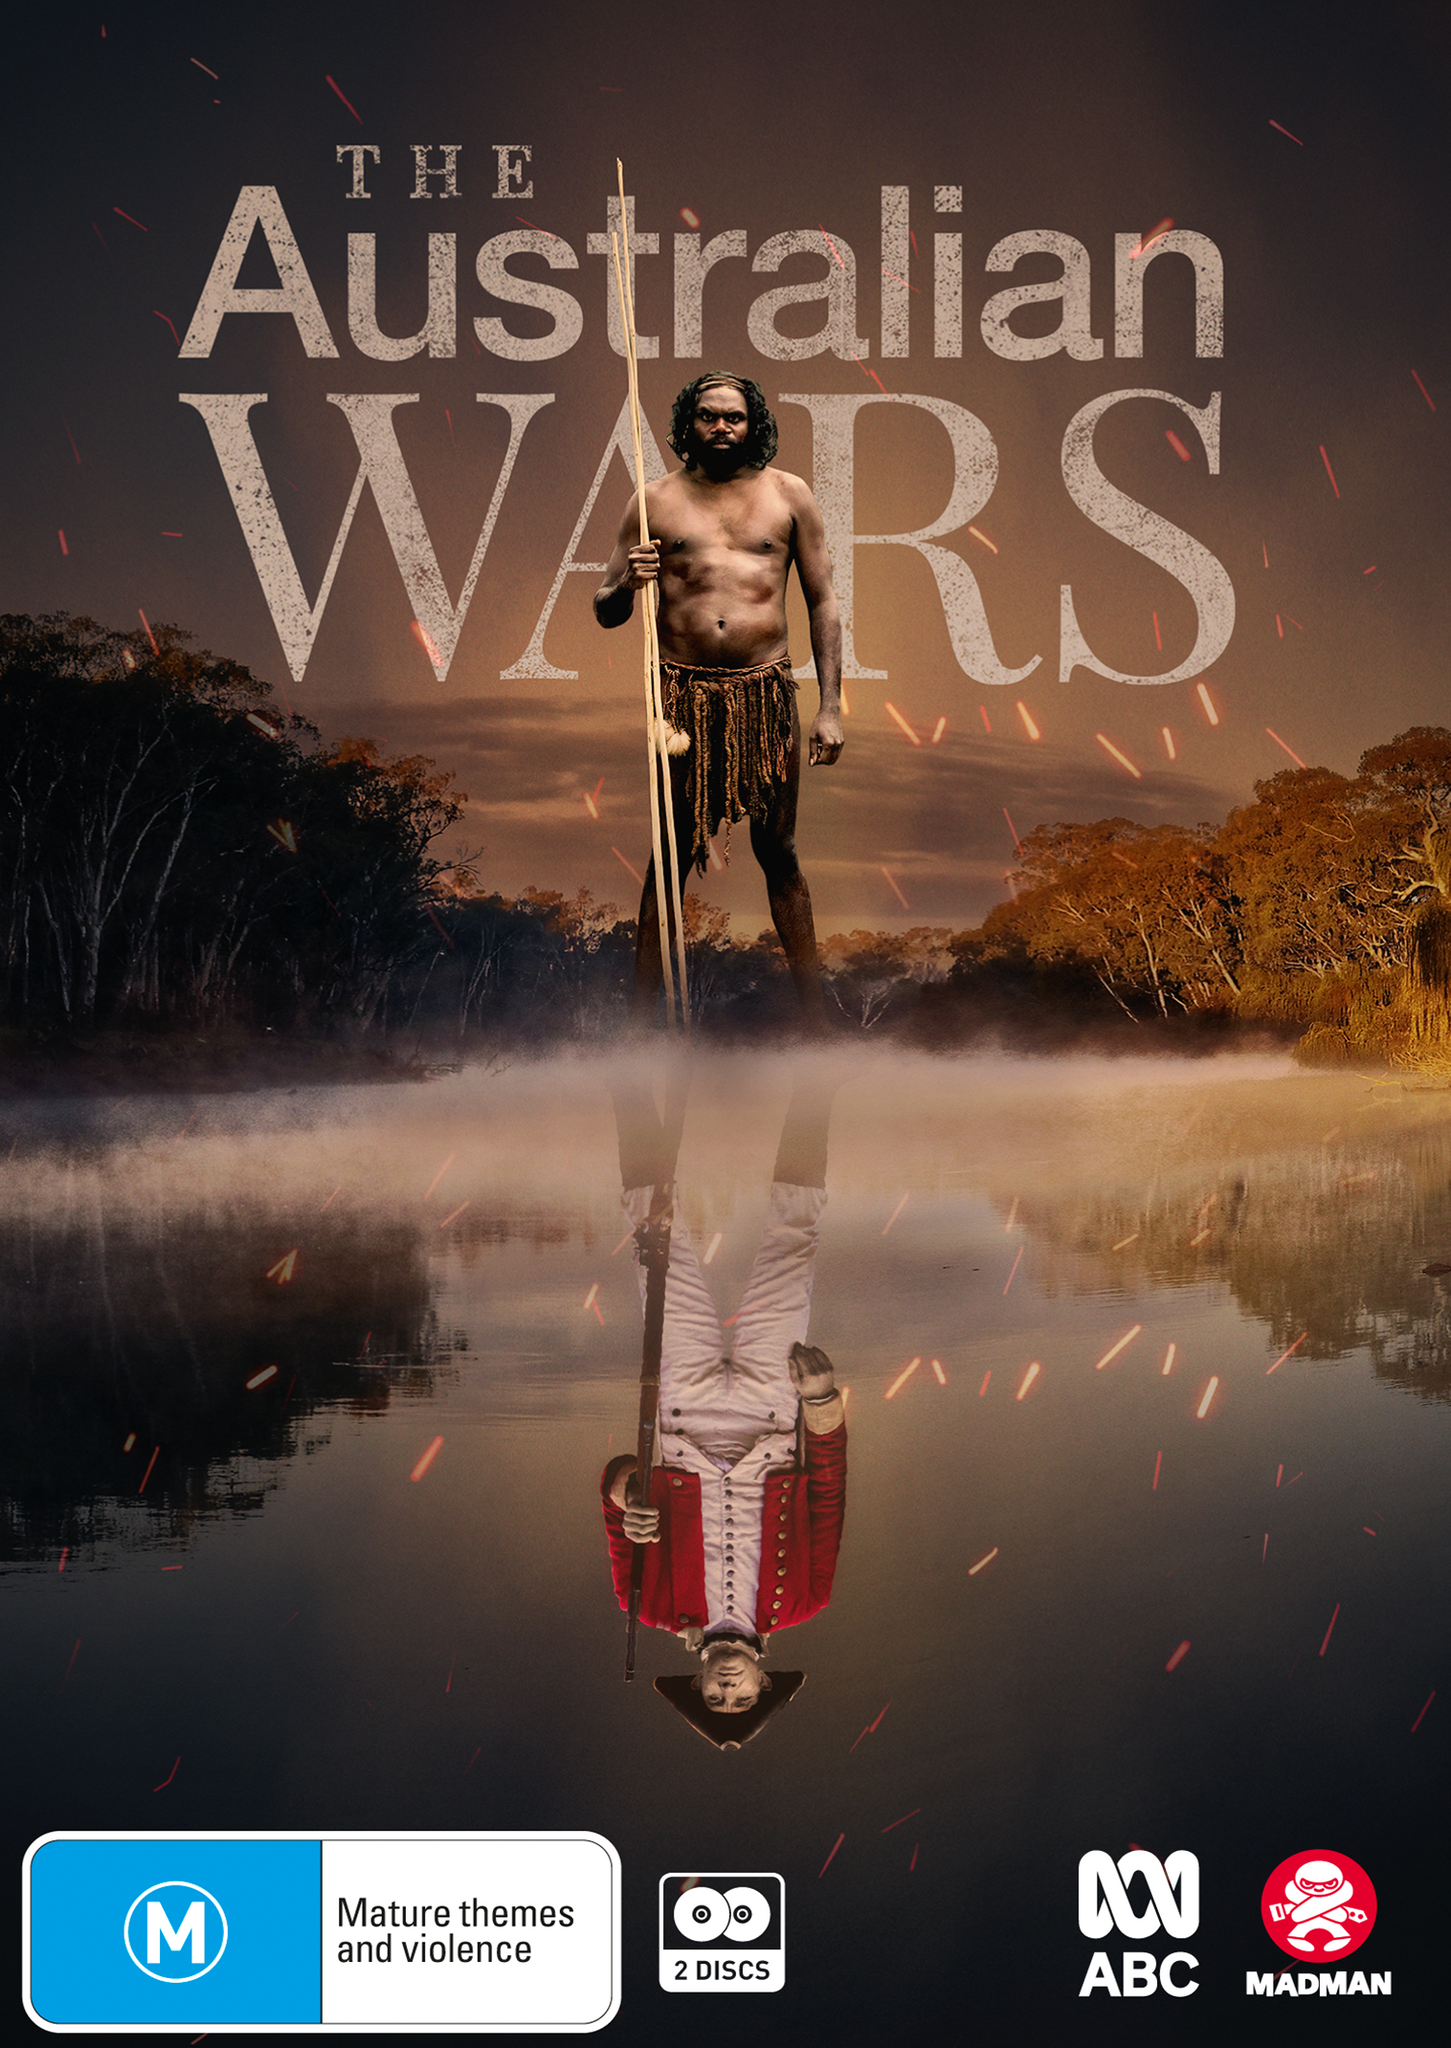 THE AUSTRALIAN WARS